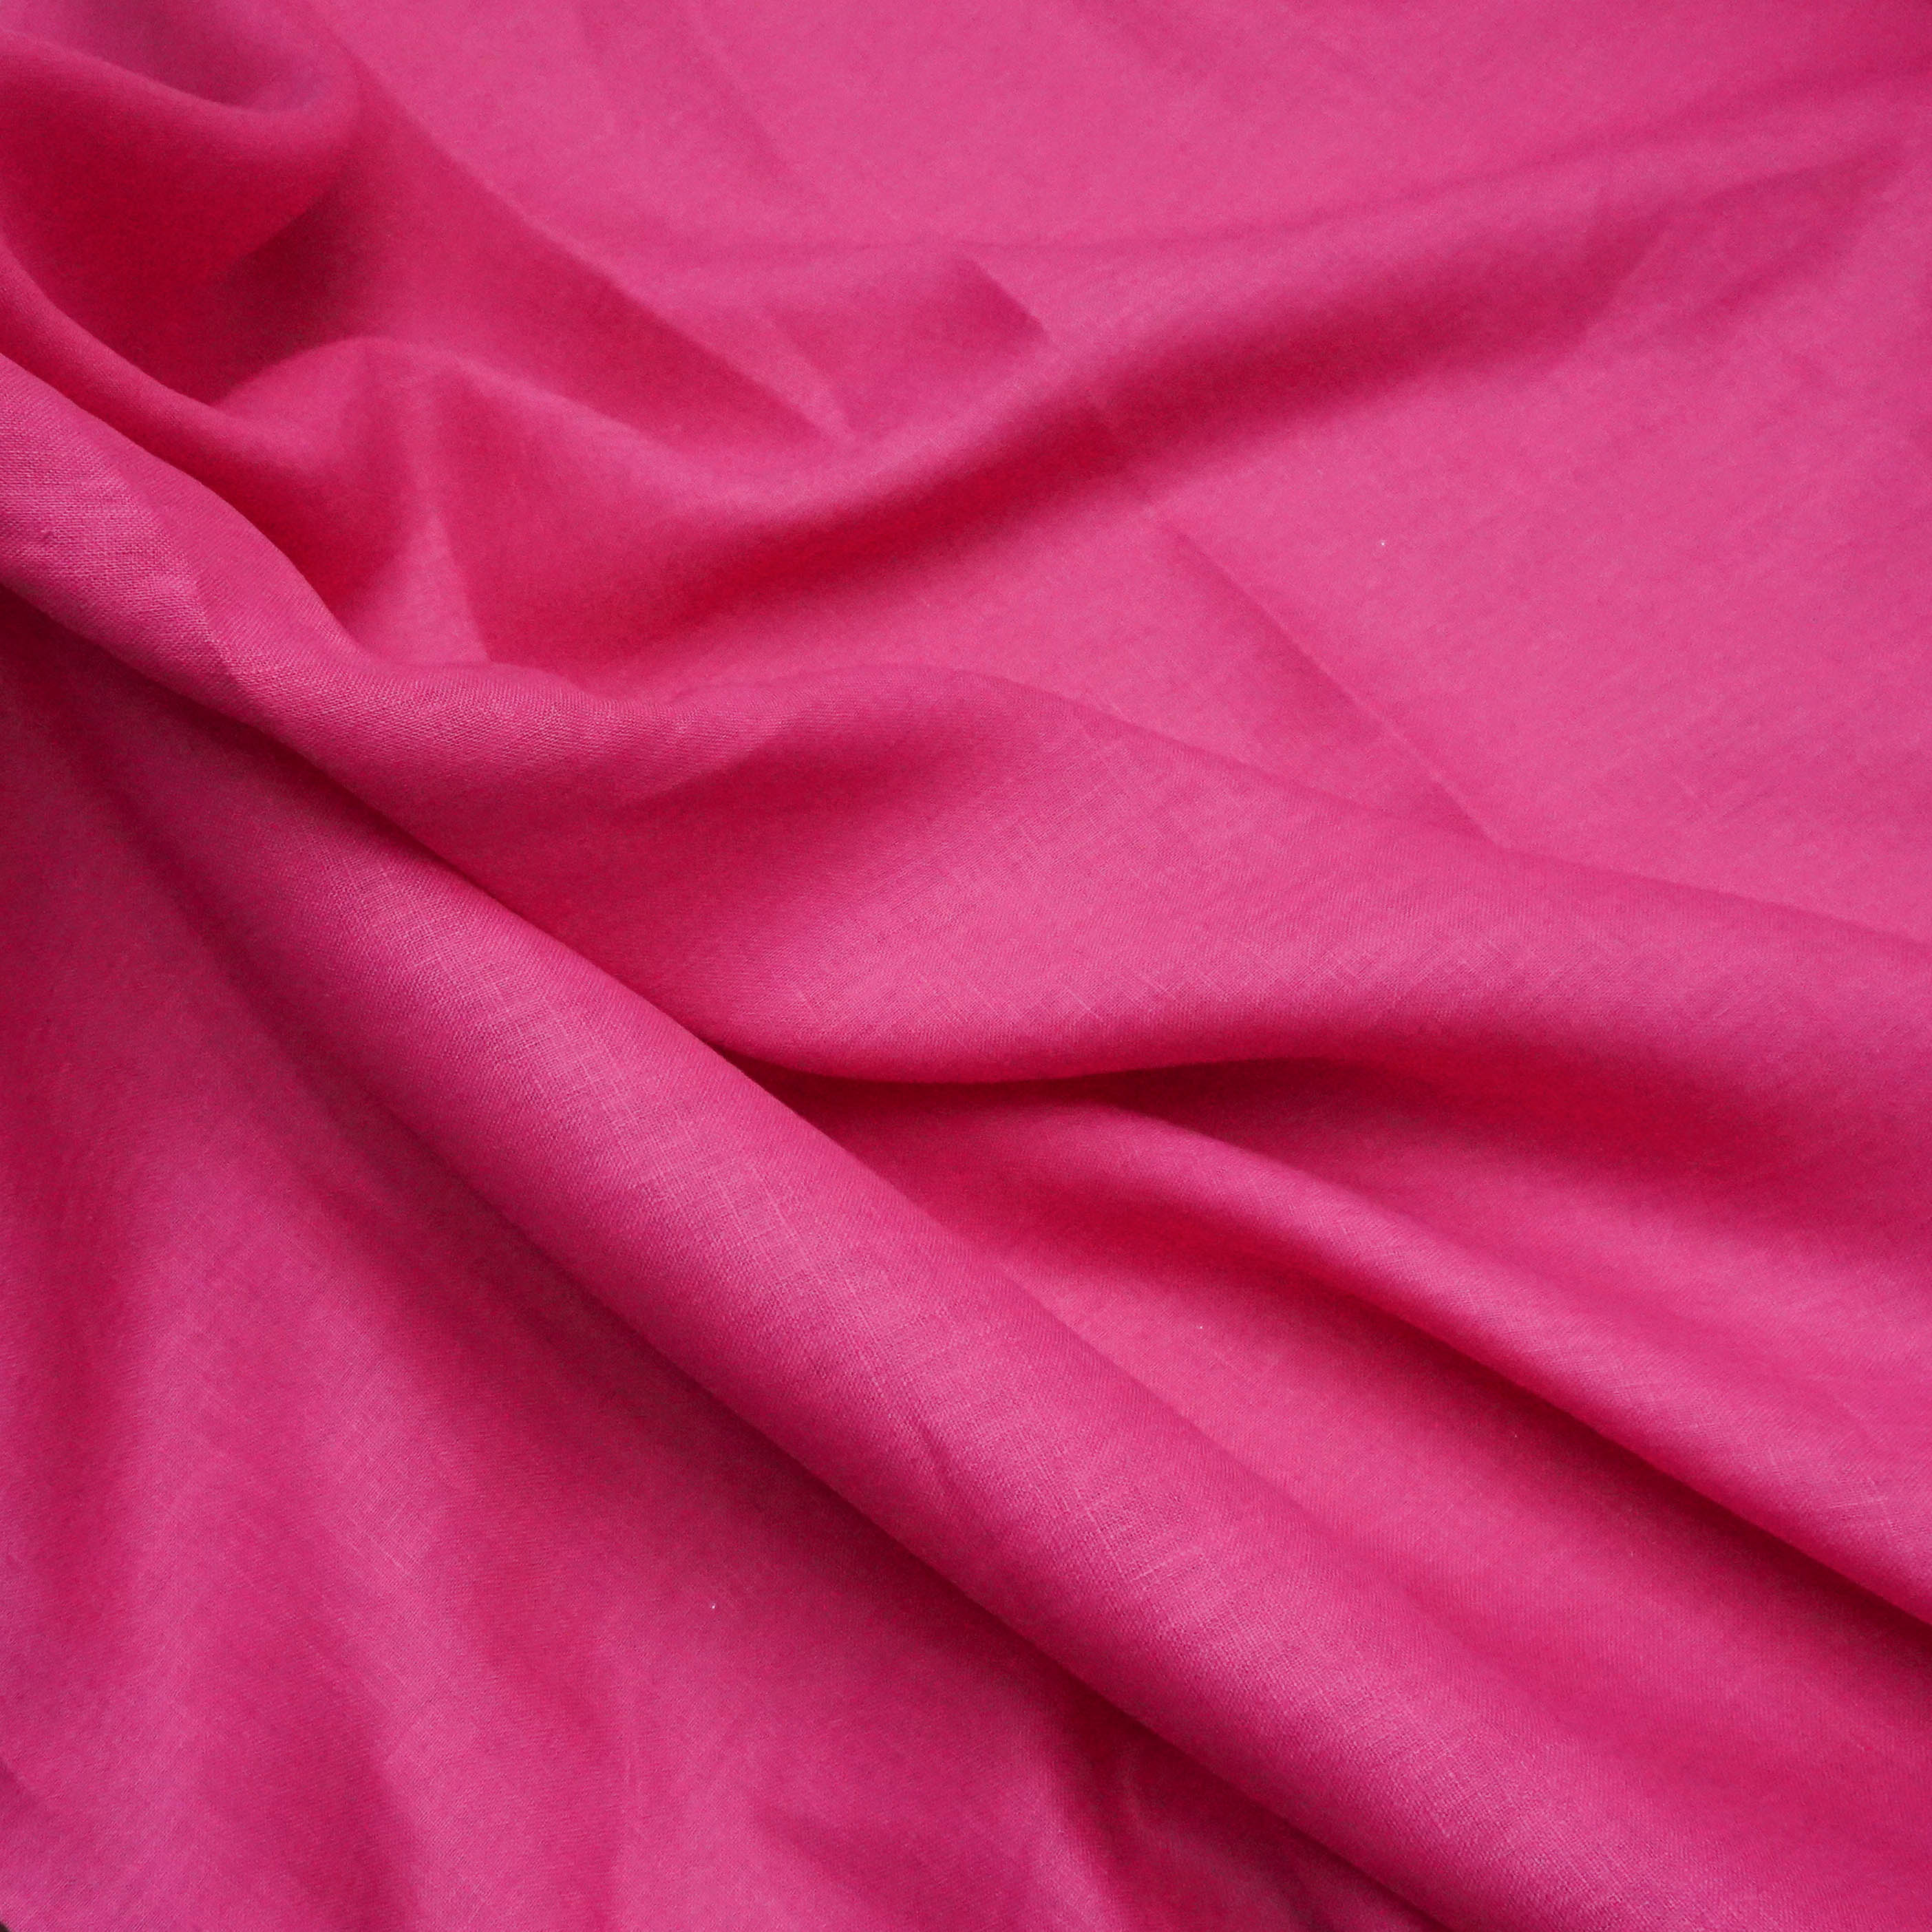 Tecido linho puro pink 100% linho